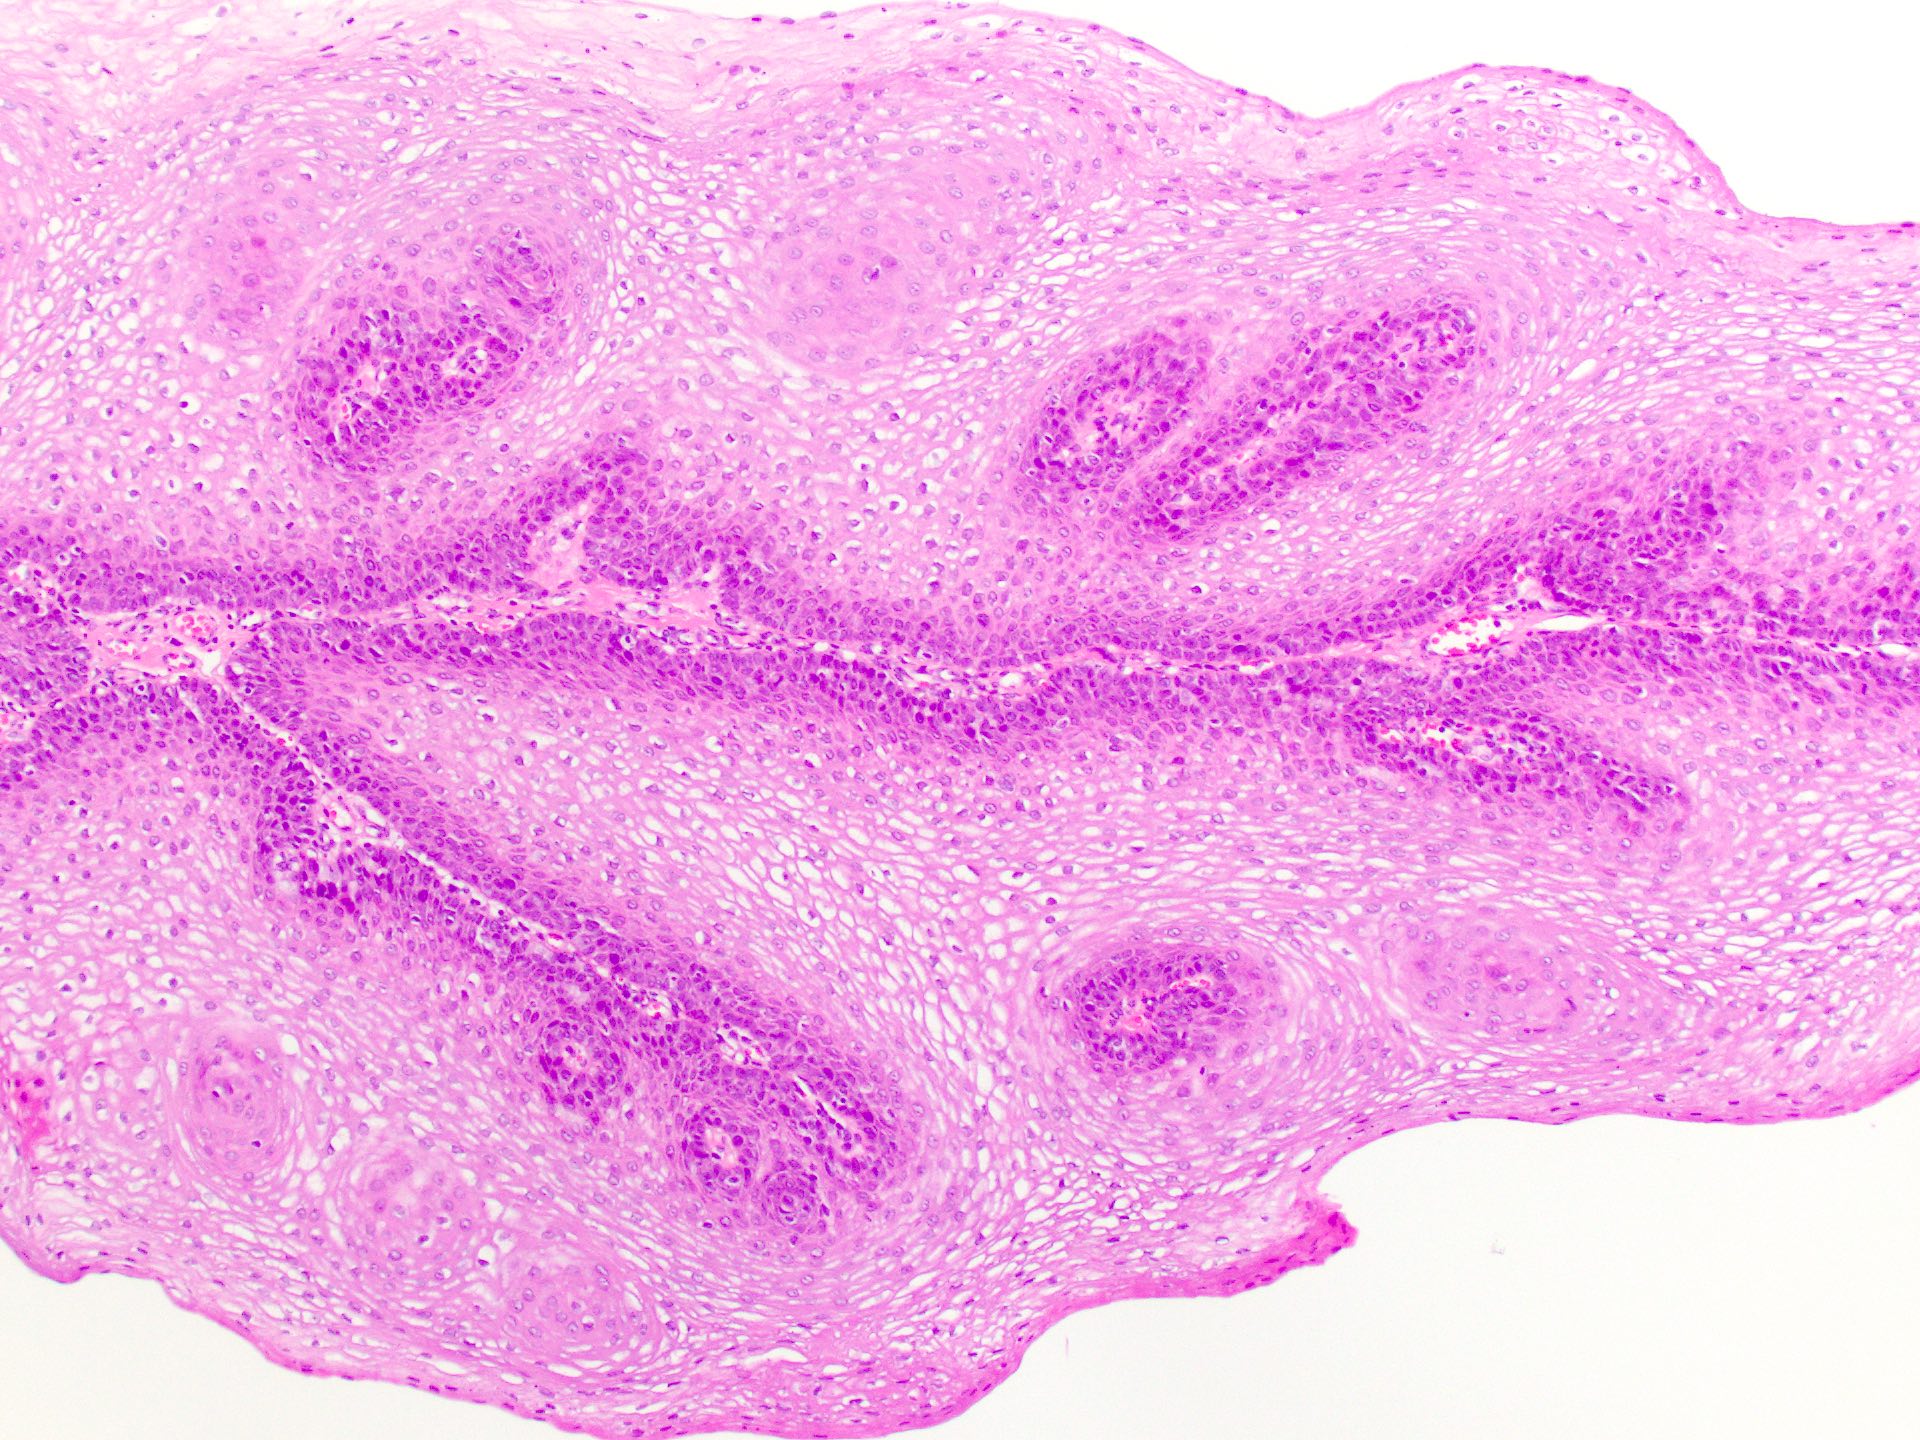 squamous papilloma urethra